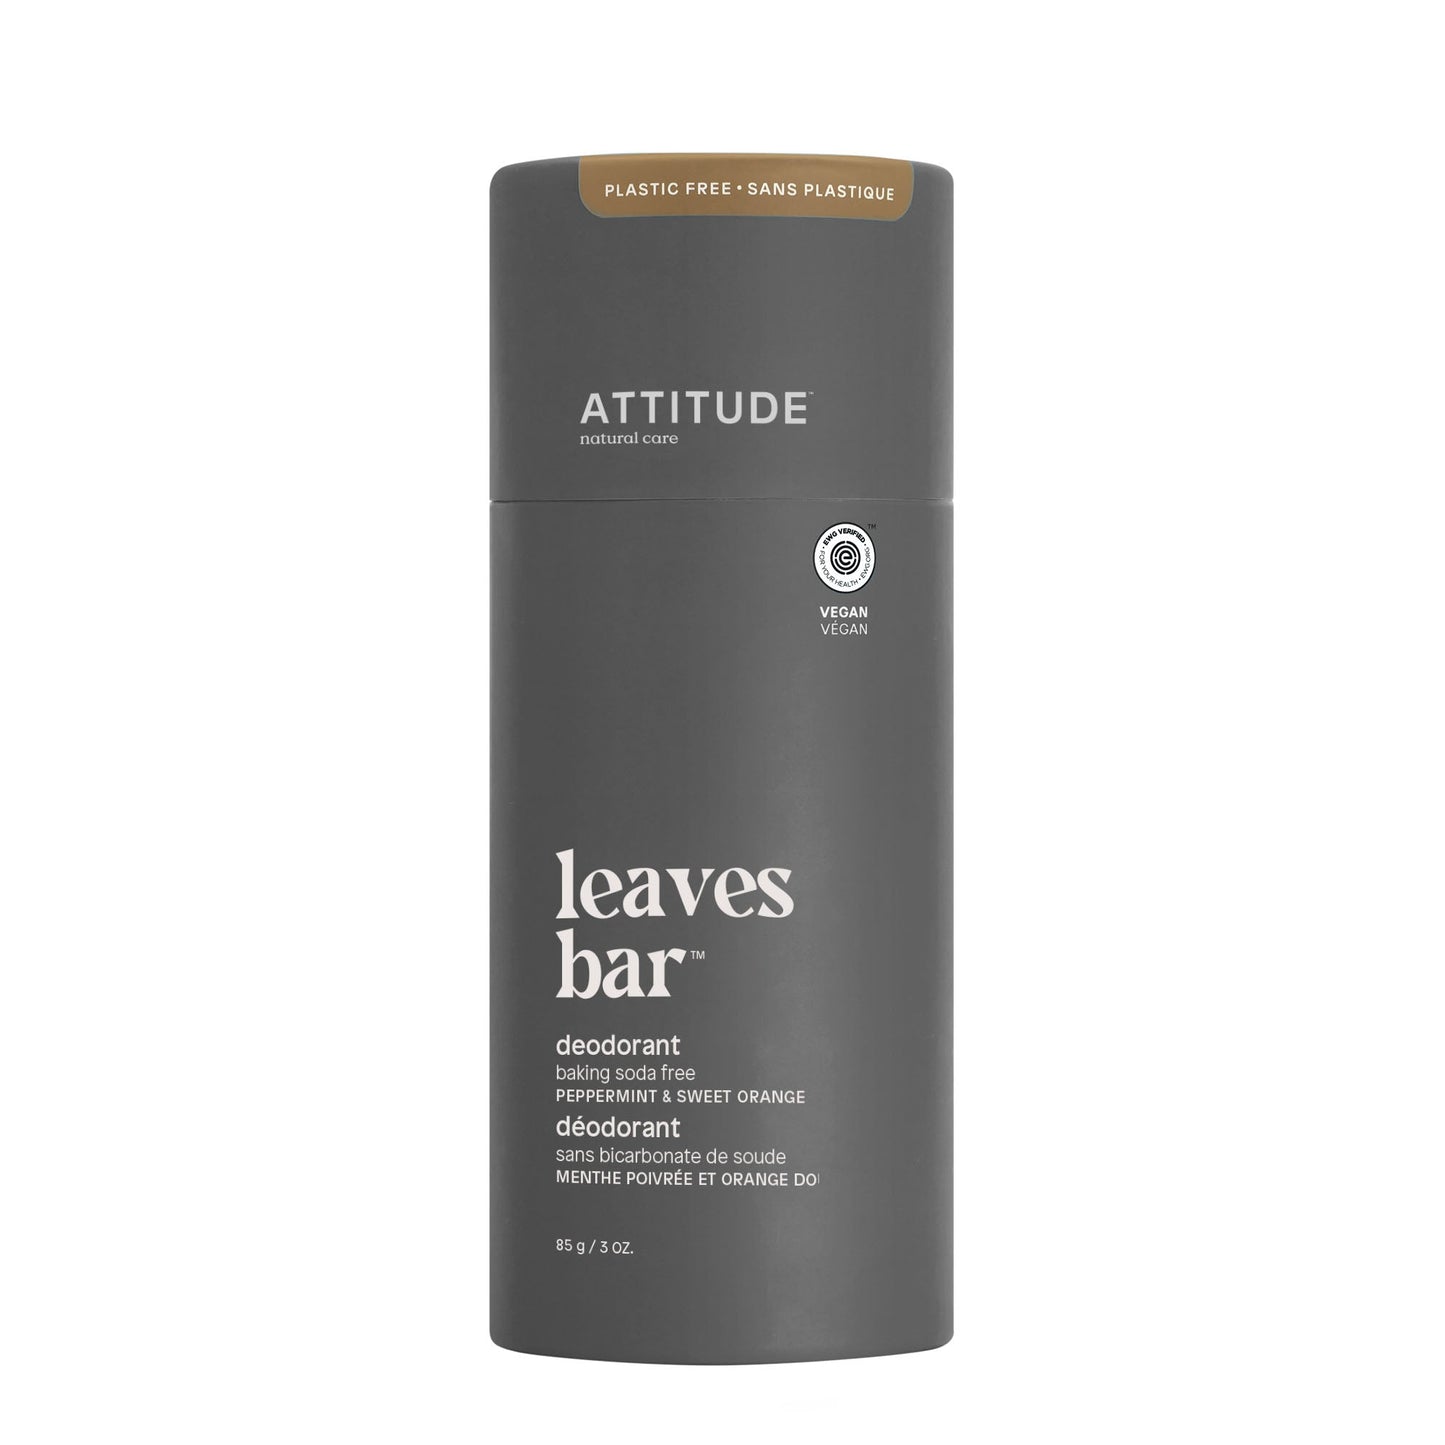 ATTITUDE deodorant leaves bar sans plastique 17126-btob_fr?_main? Menthe poivrée & orange douce